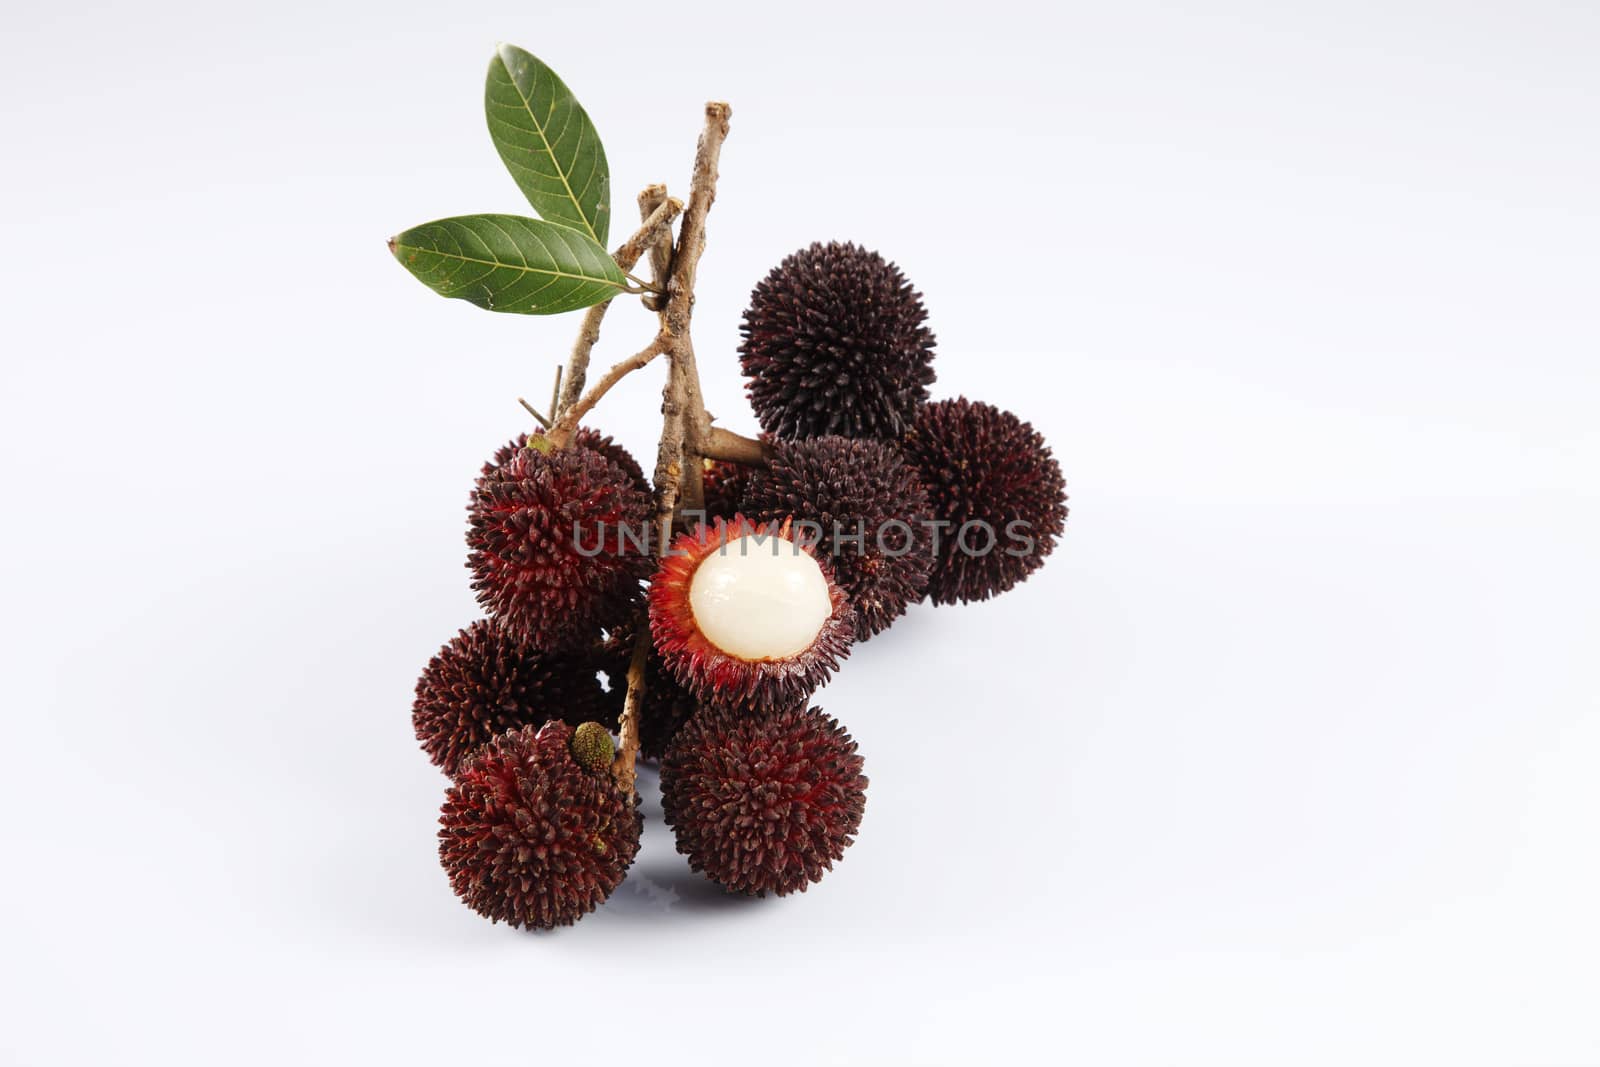 Pulasan or kapulasan fruit by eskaylim